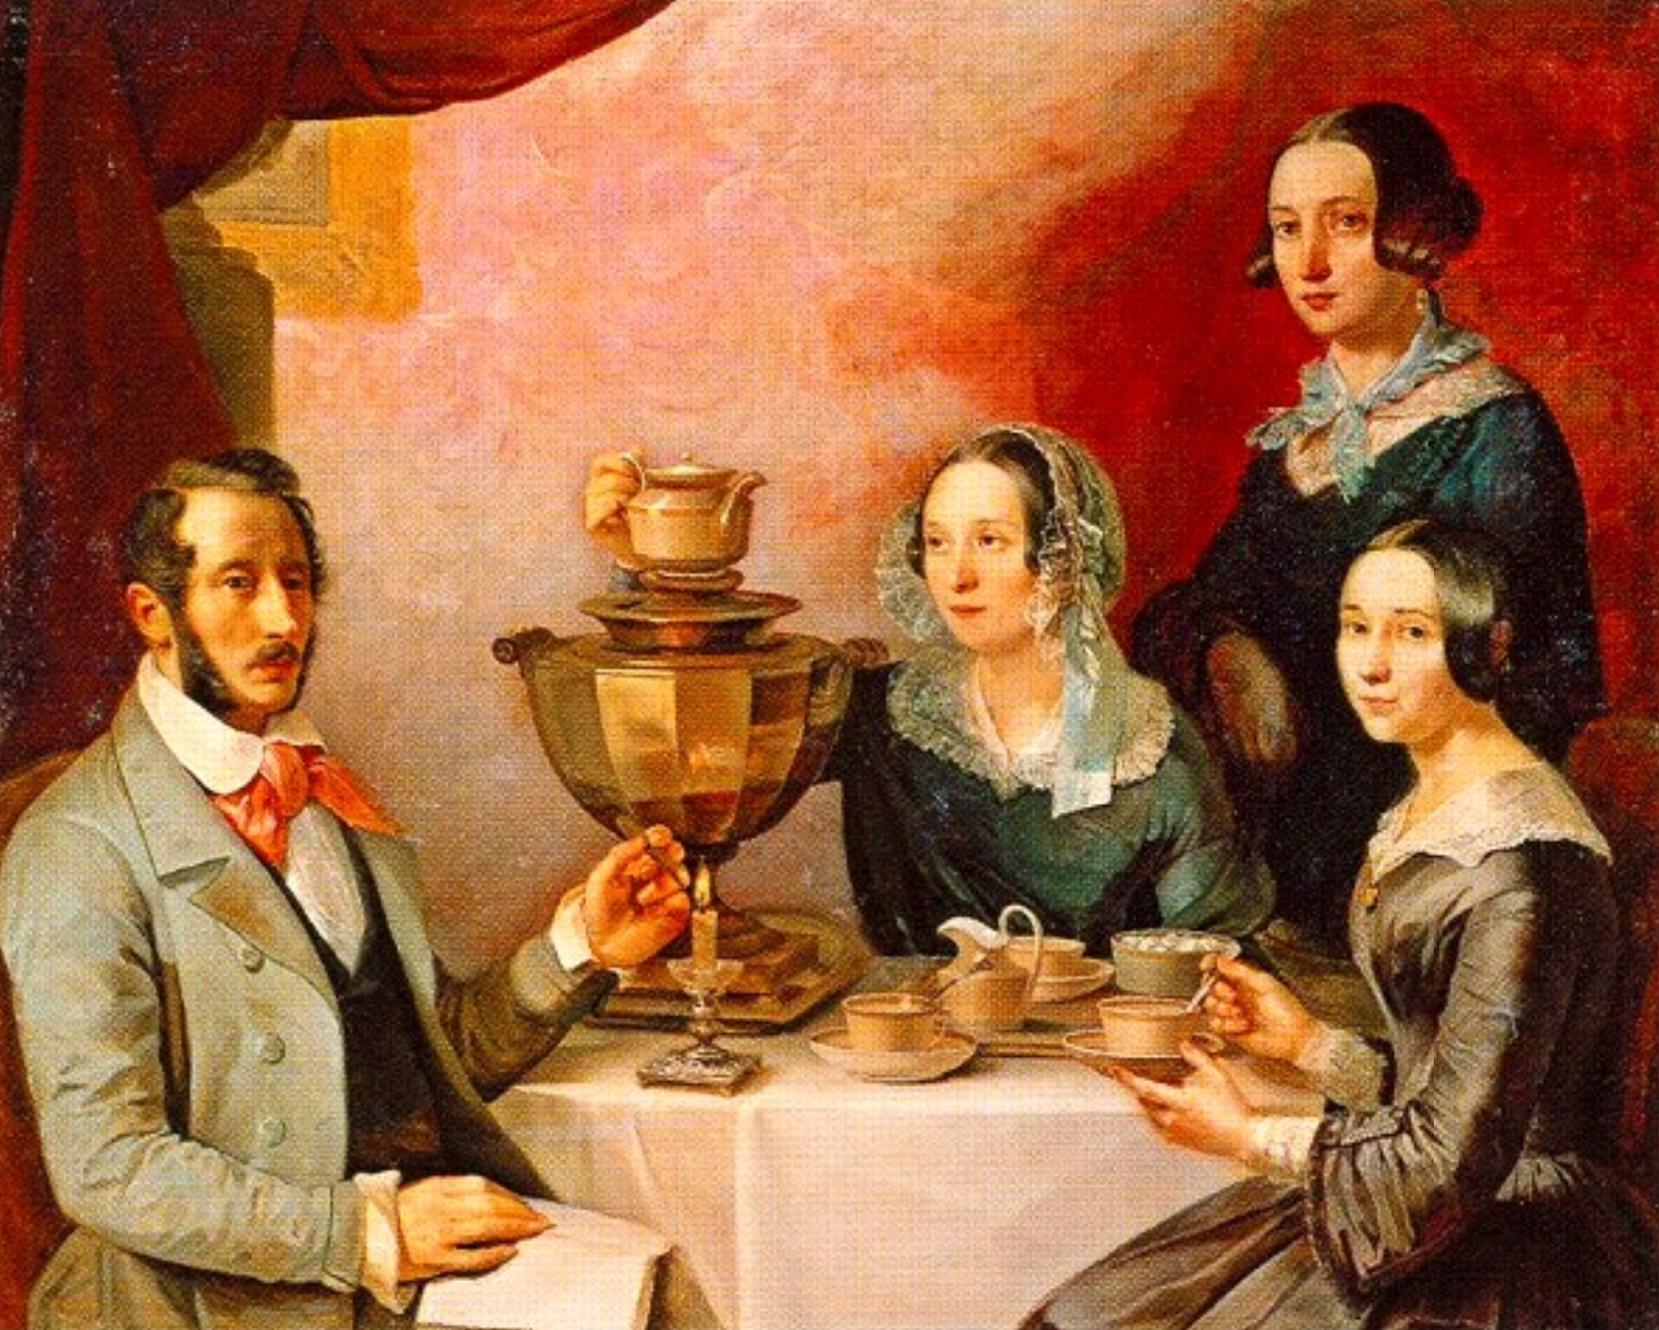 Мягков семейный портрет. Завтрак купчихи 19 века. Исторический ужин